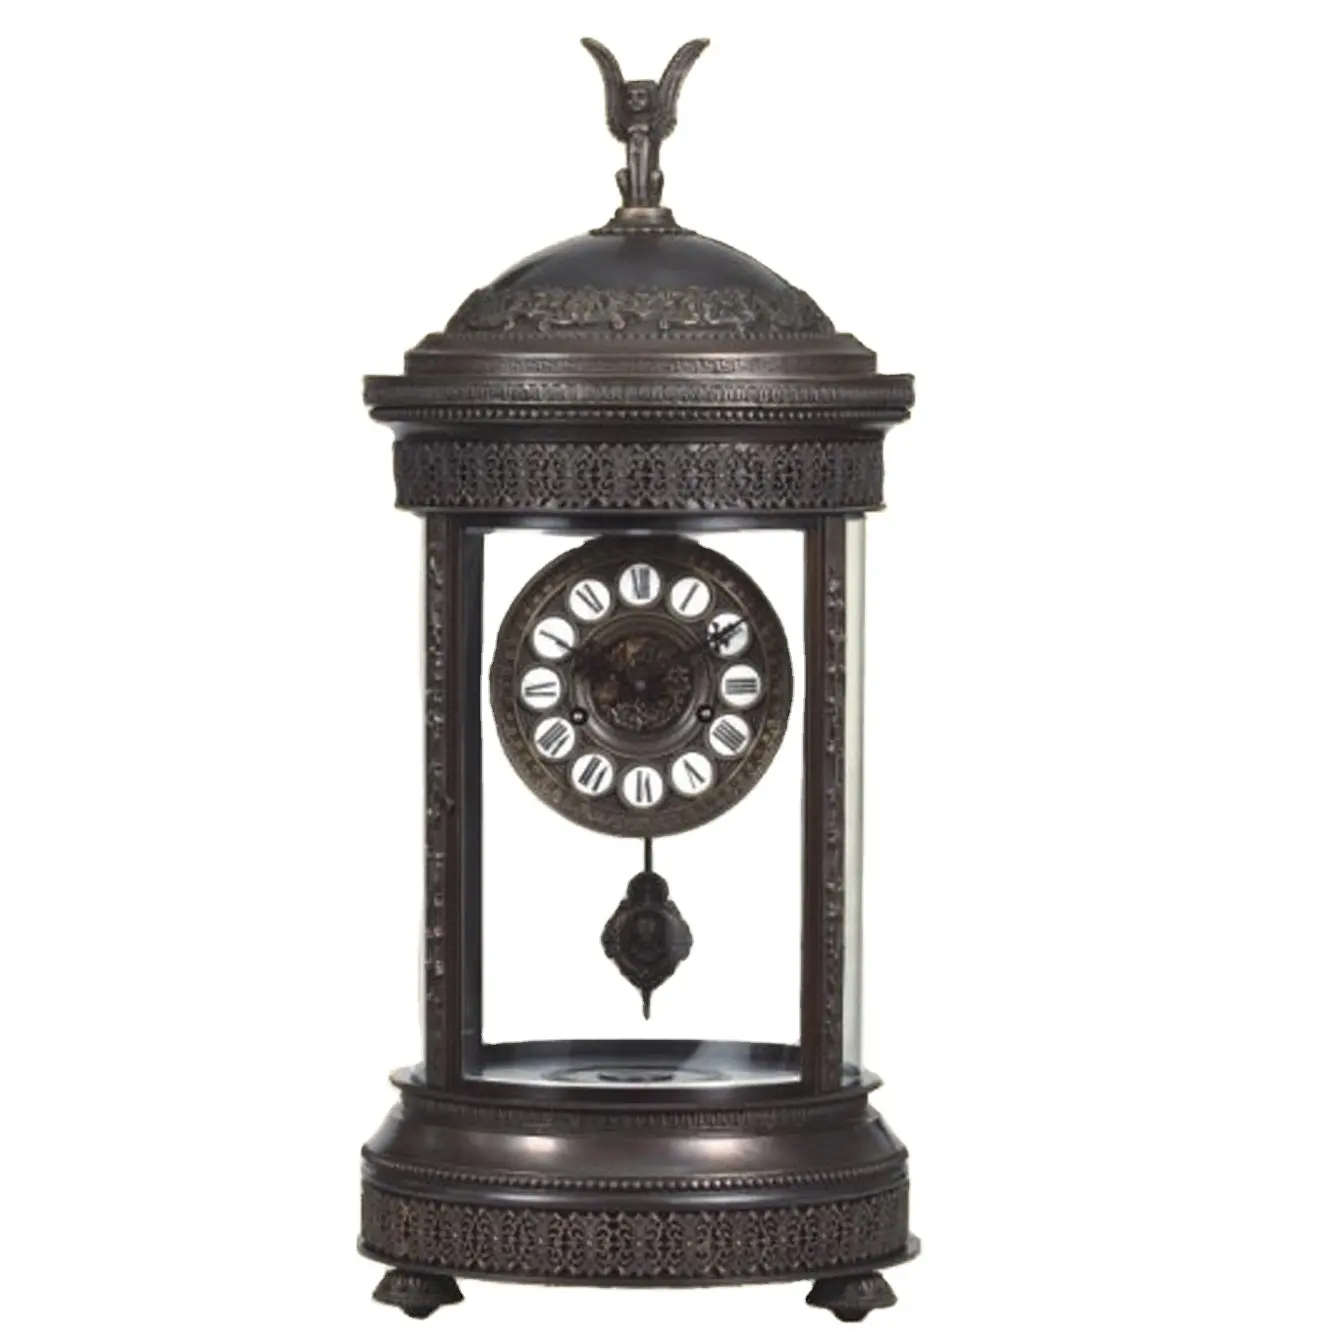 Antike Bronze gravierte Messing-Rotunde Säulendach Porzellan-Nr. Einsatz auf dem Messing-Zifferblatt Mercury-Spendel mechanische Uhr/Uhr